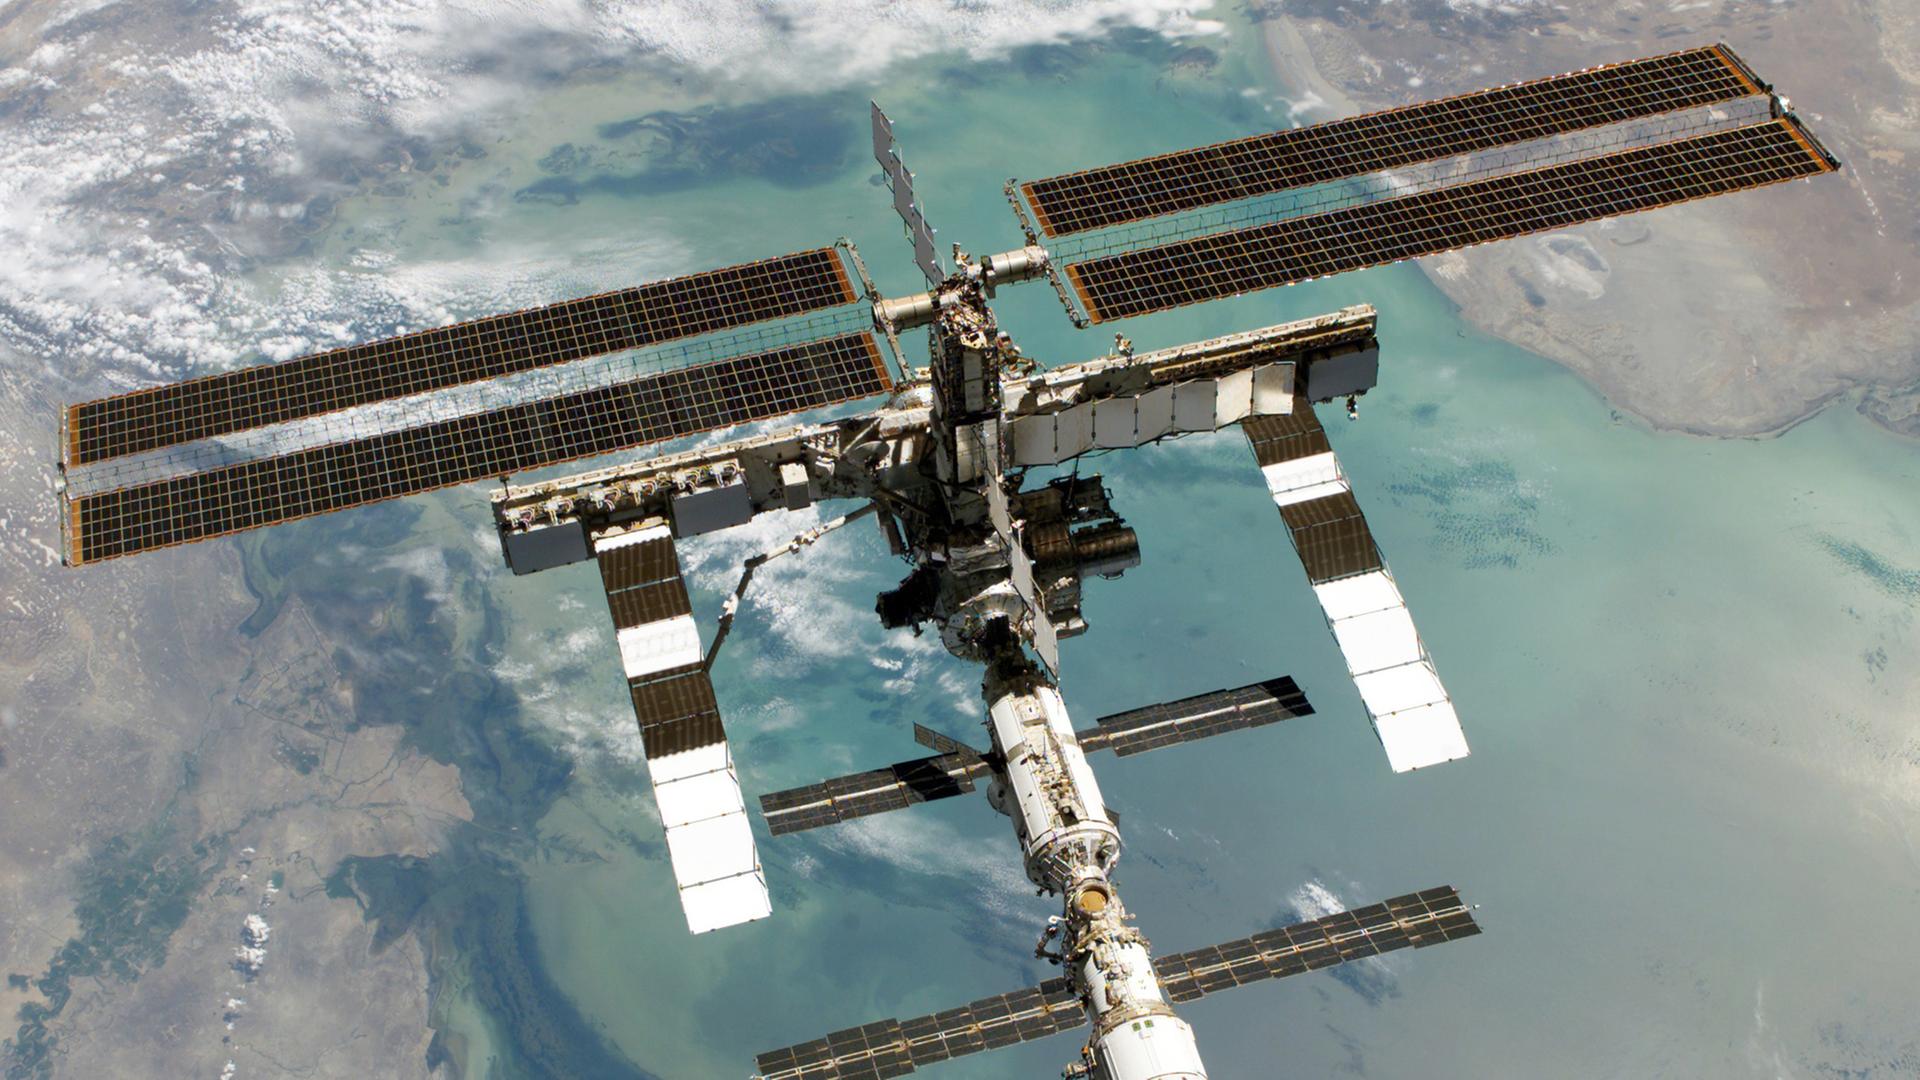 Totale der Internationalen Raumstation, im Hintergrund ein Ausschnitt der Erde, von der Meer und Landflächen zu sehen sind